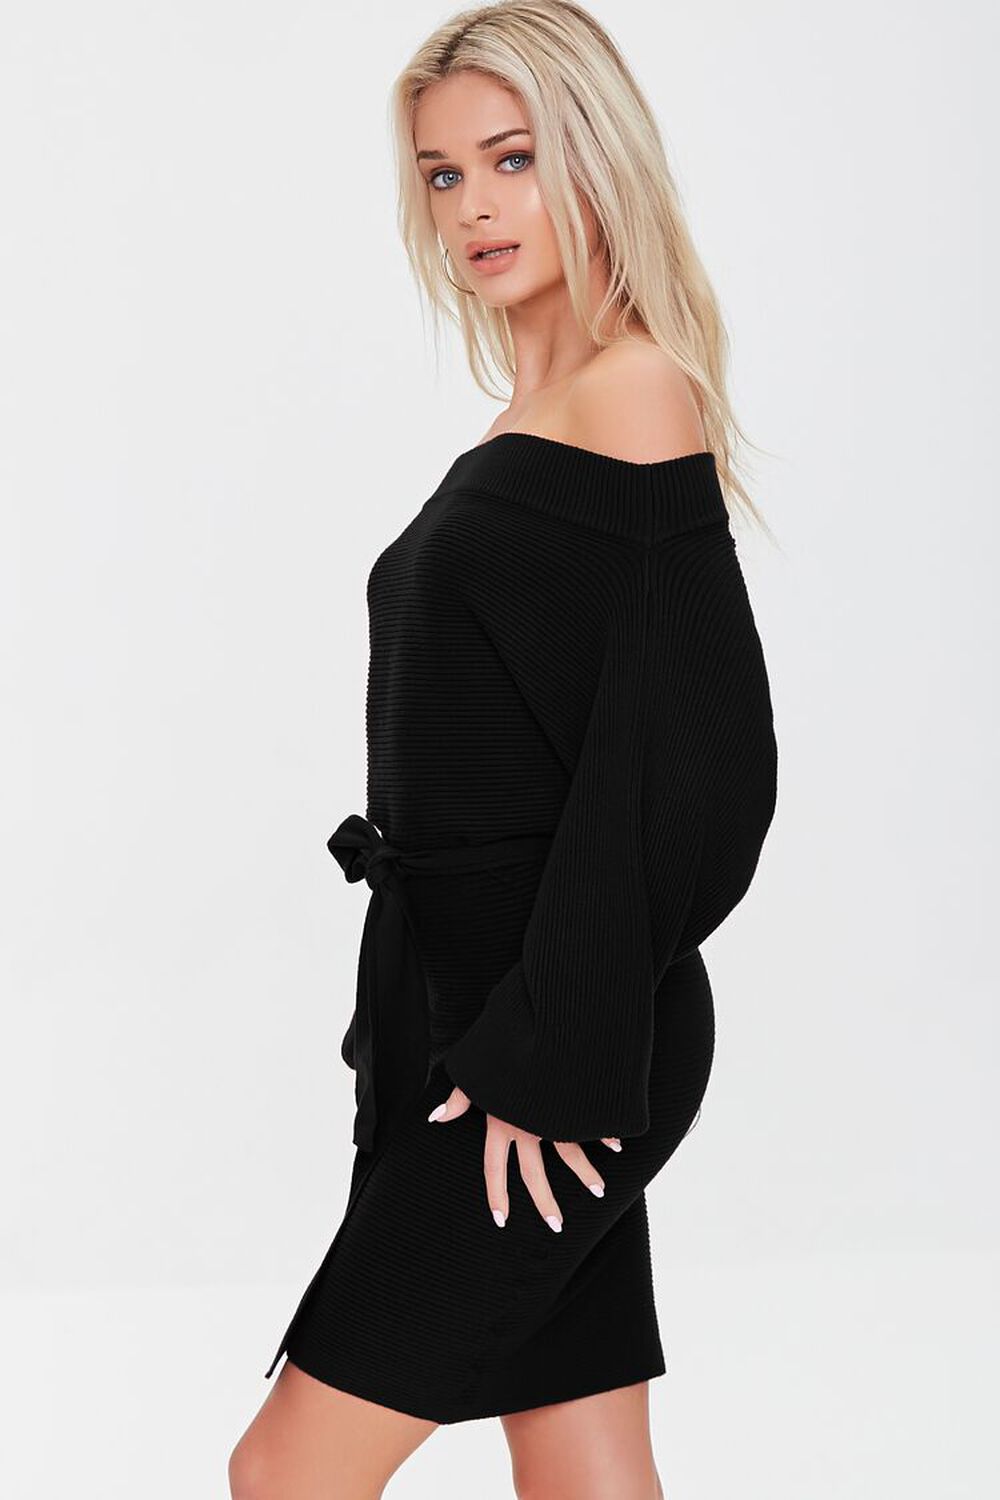 BLACK Ribbed Off-the-Shoulder Sweater Dress, image 2